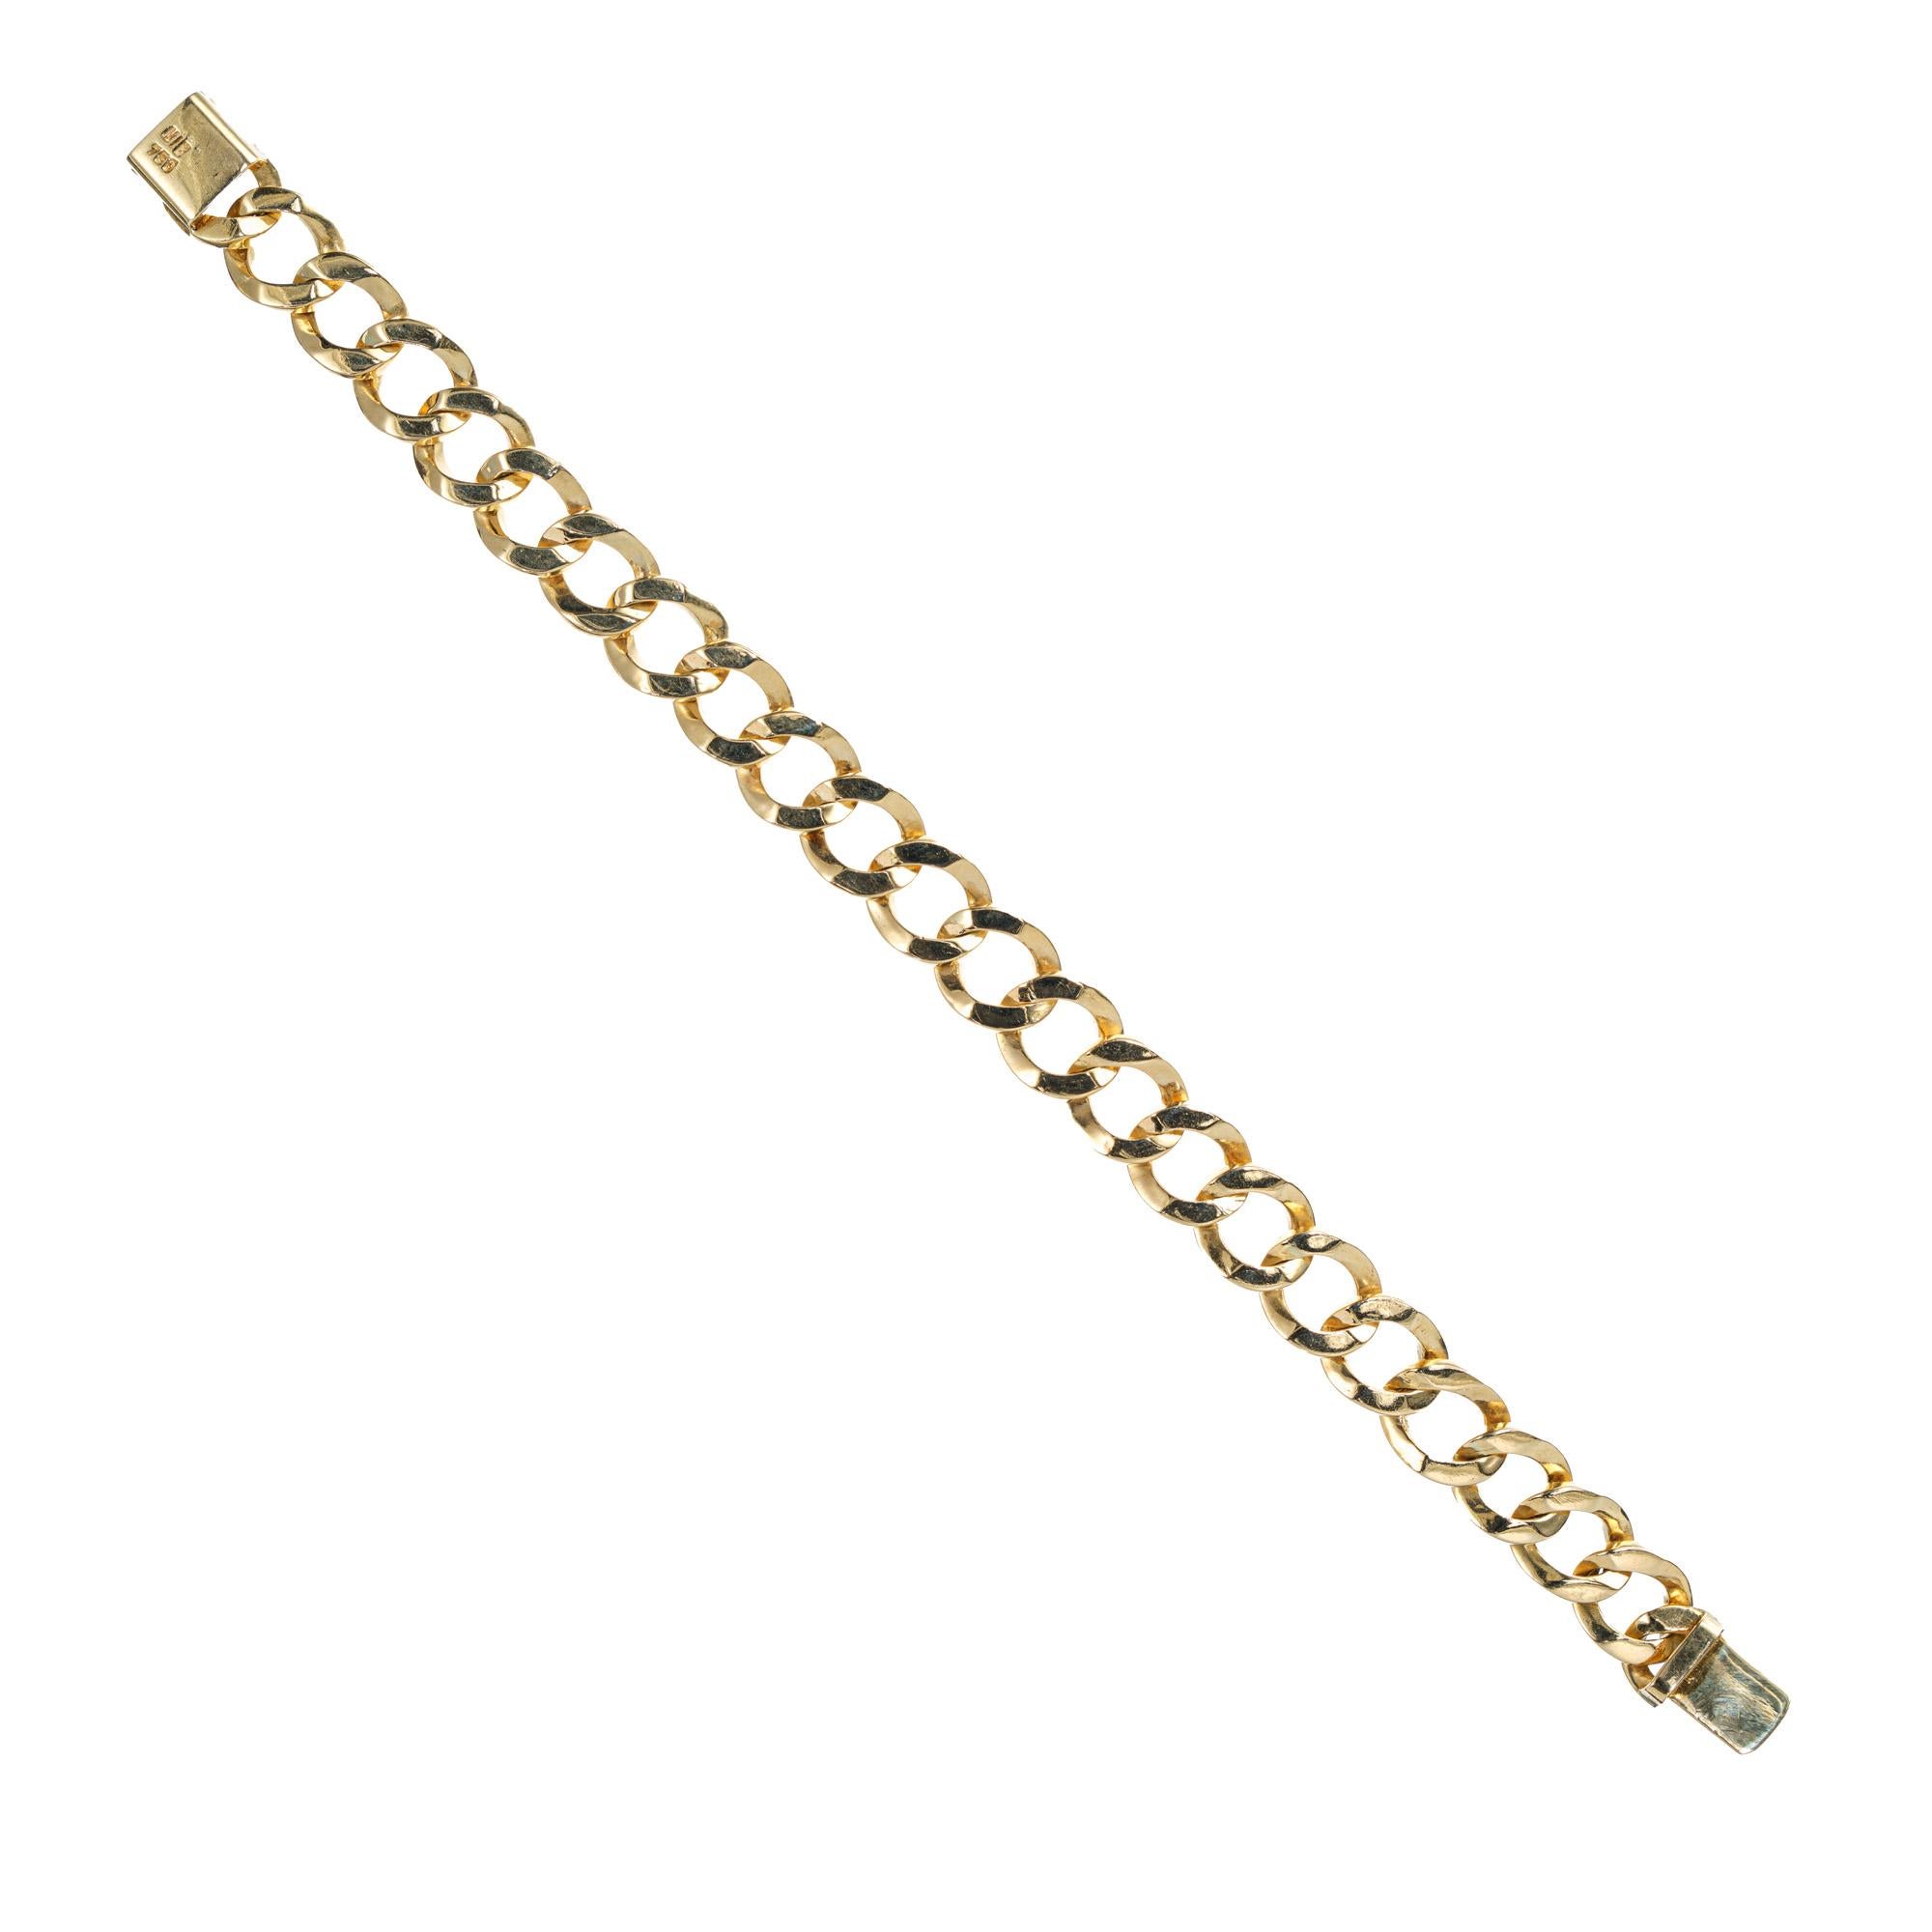 Bracelet à maillons arrondis en or massif 18k de 11mm de large datant des années 1970. 7,5 pouces de long

Or jaune 18k 
Estampillé : 750
44.9 grammes
Bracelet : 7,5 pouces
Largeur : 11 mm
Épaisseur/profondeur : 3.3 mm
